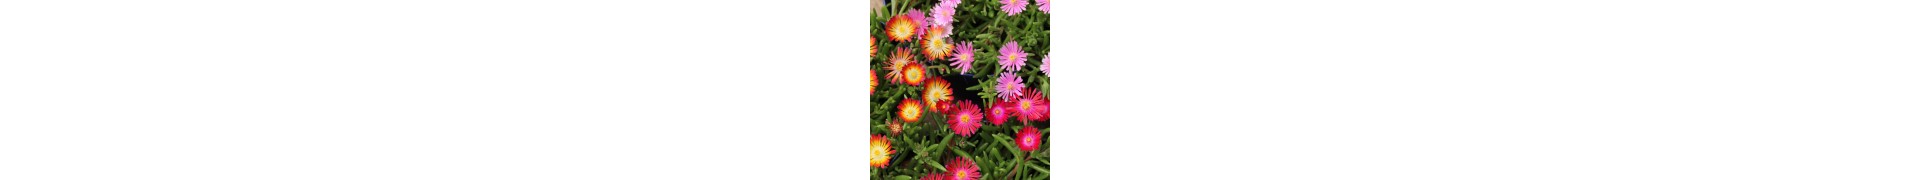 Plantas exterior resistentes con flor para jardín| La Majosa